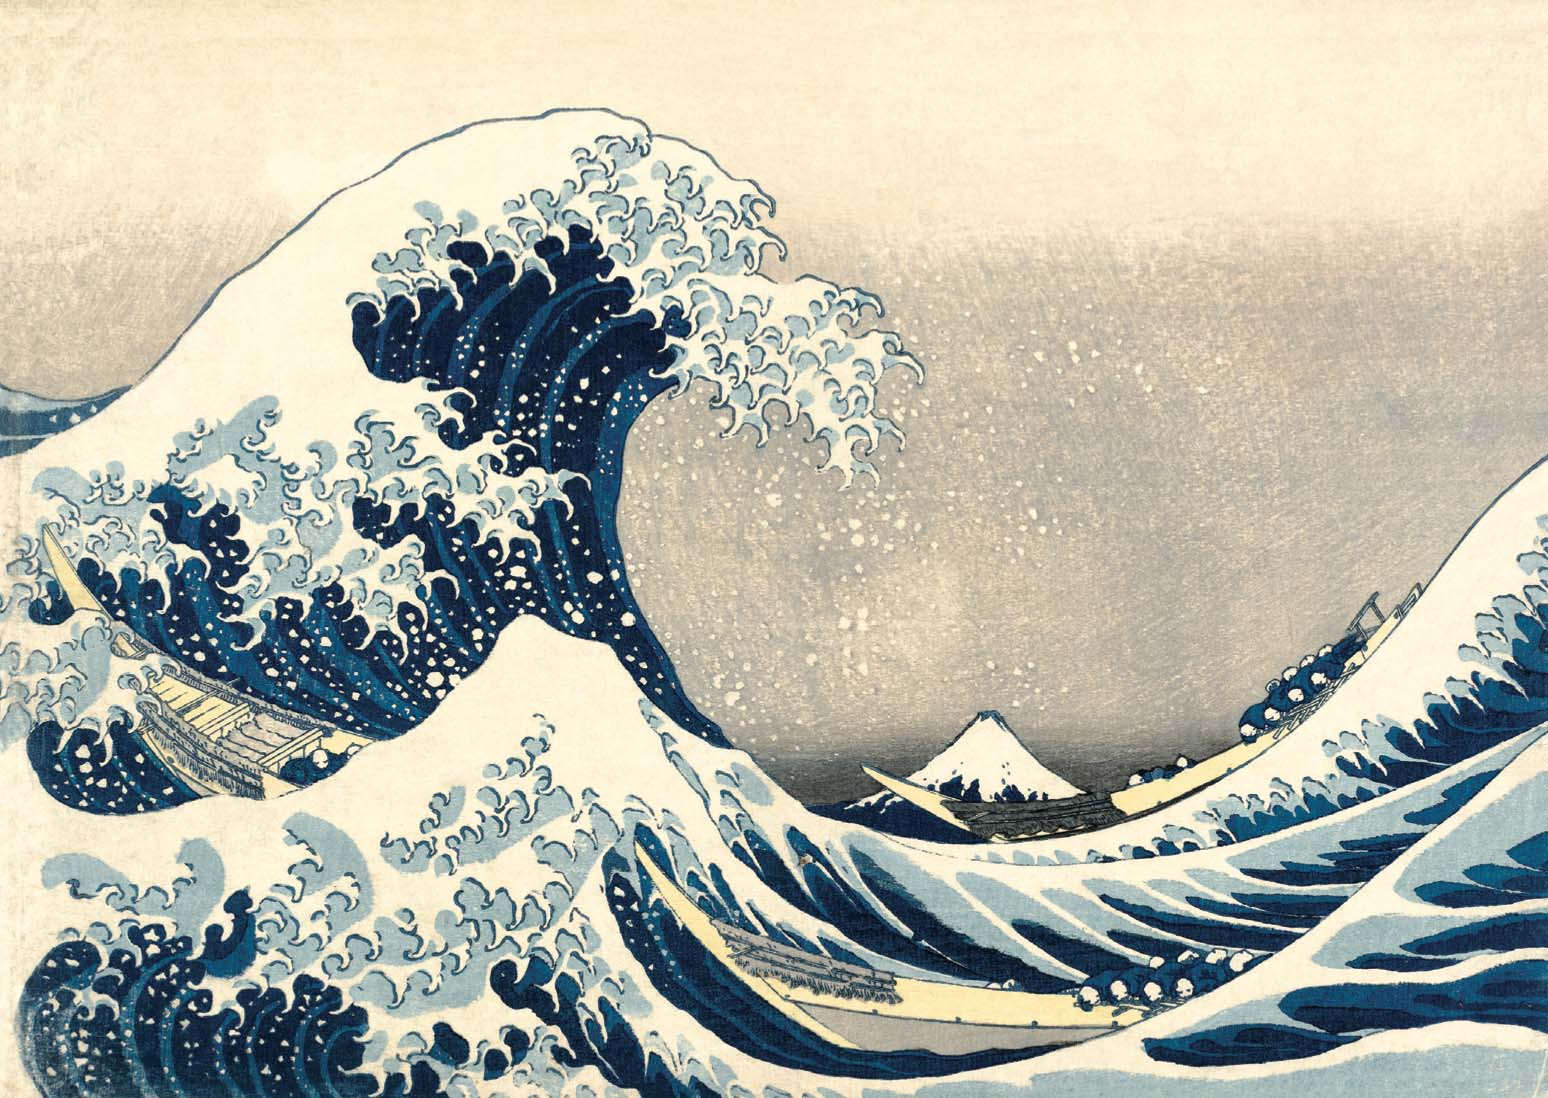 Under the Wave off Kanagawa (Kanagawa-oki nami-ura), also known as the Great Wave